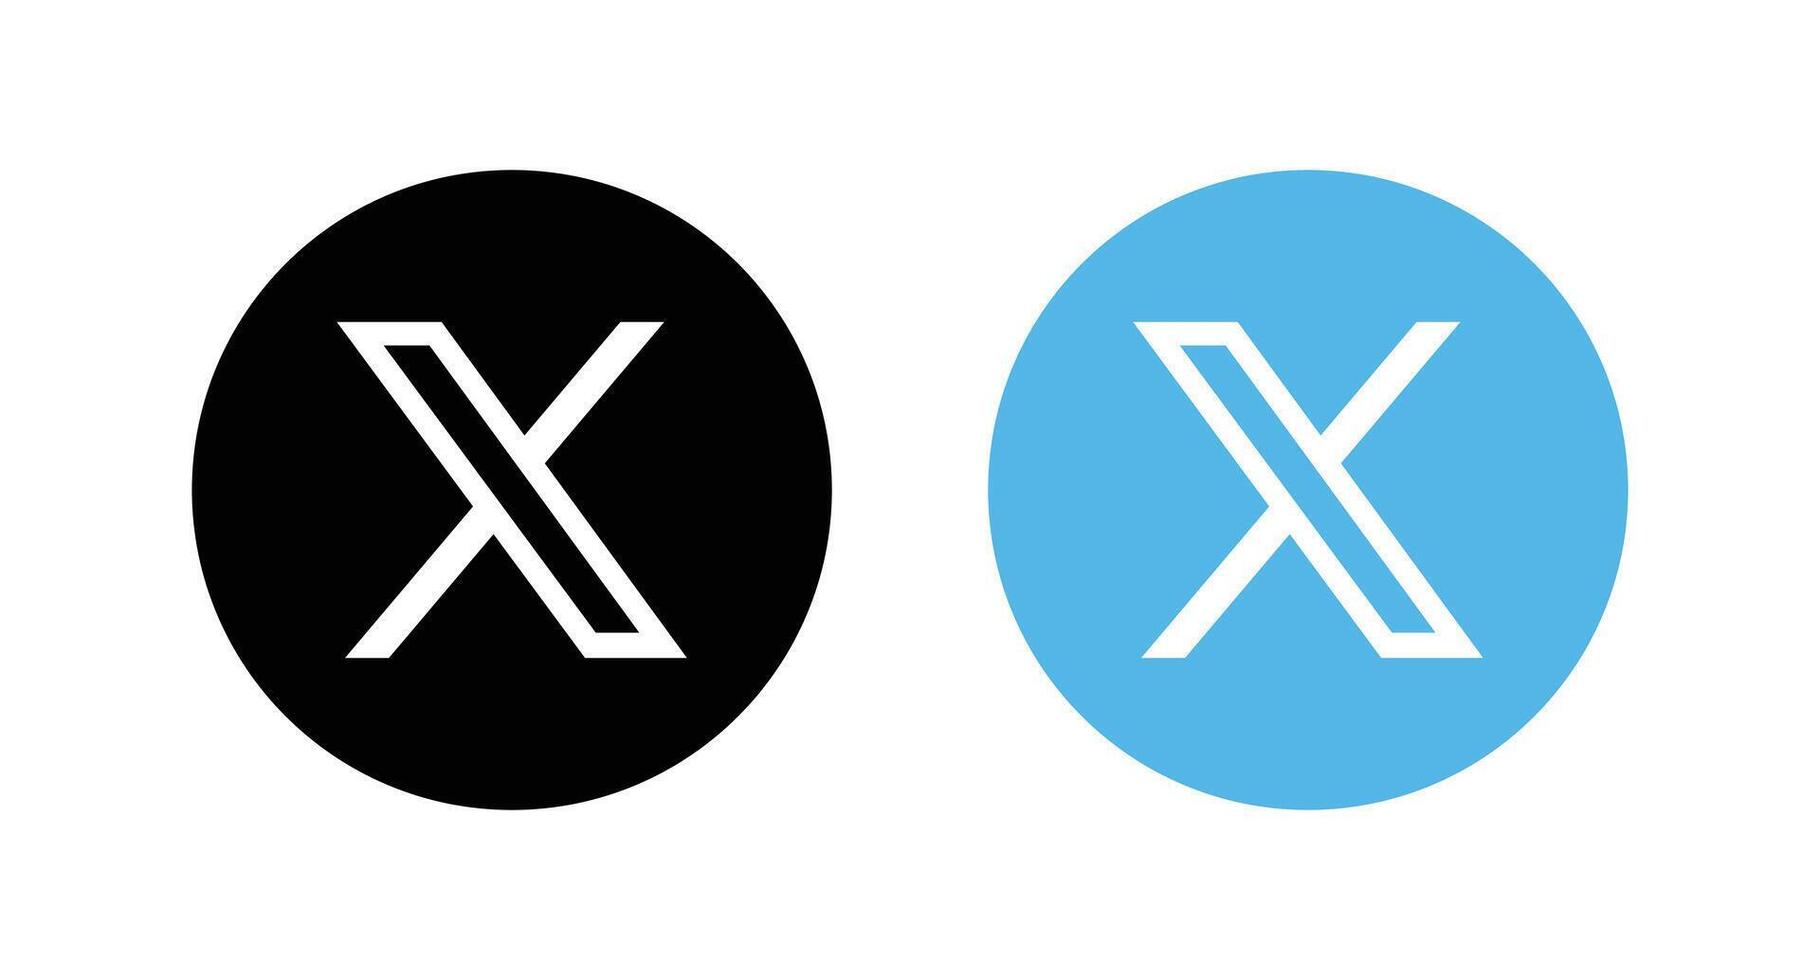 nuevo gorjeo X logo. gorjeo icono. X social medios de comunicación icono. vector